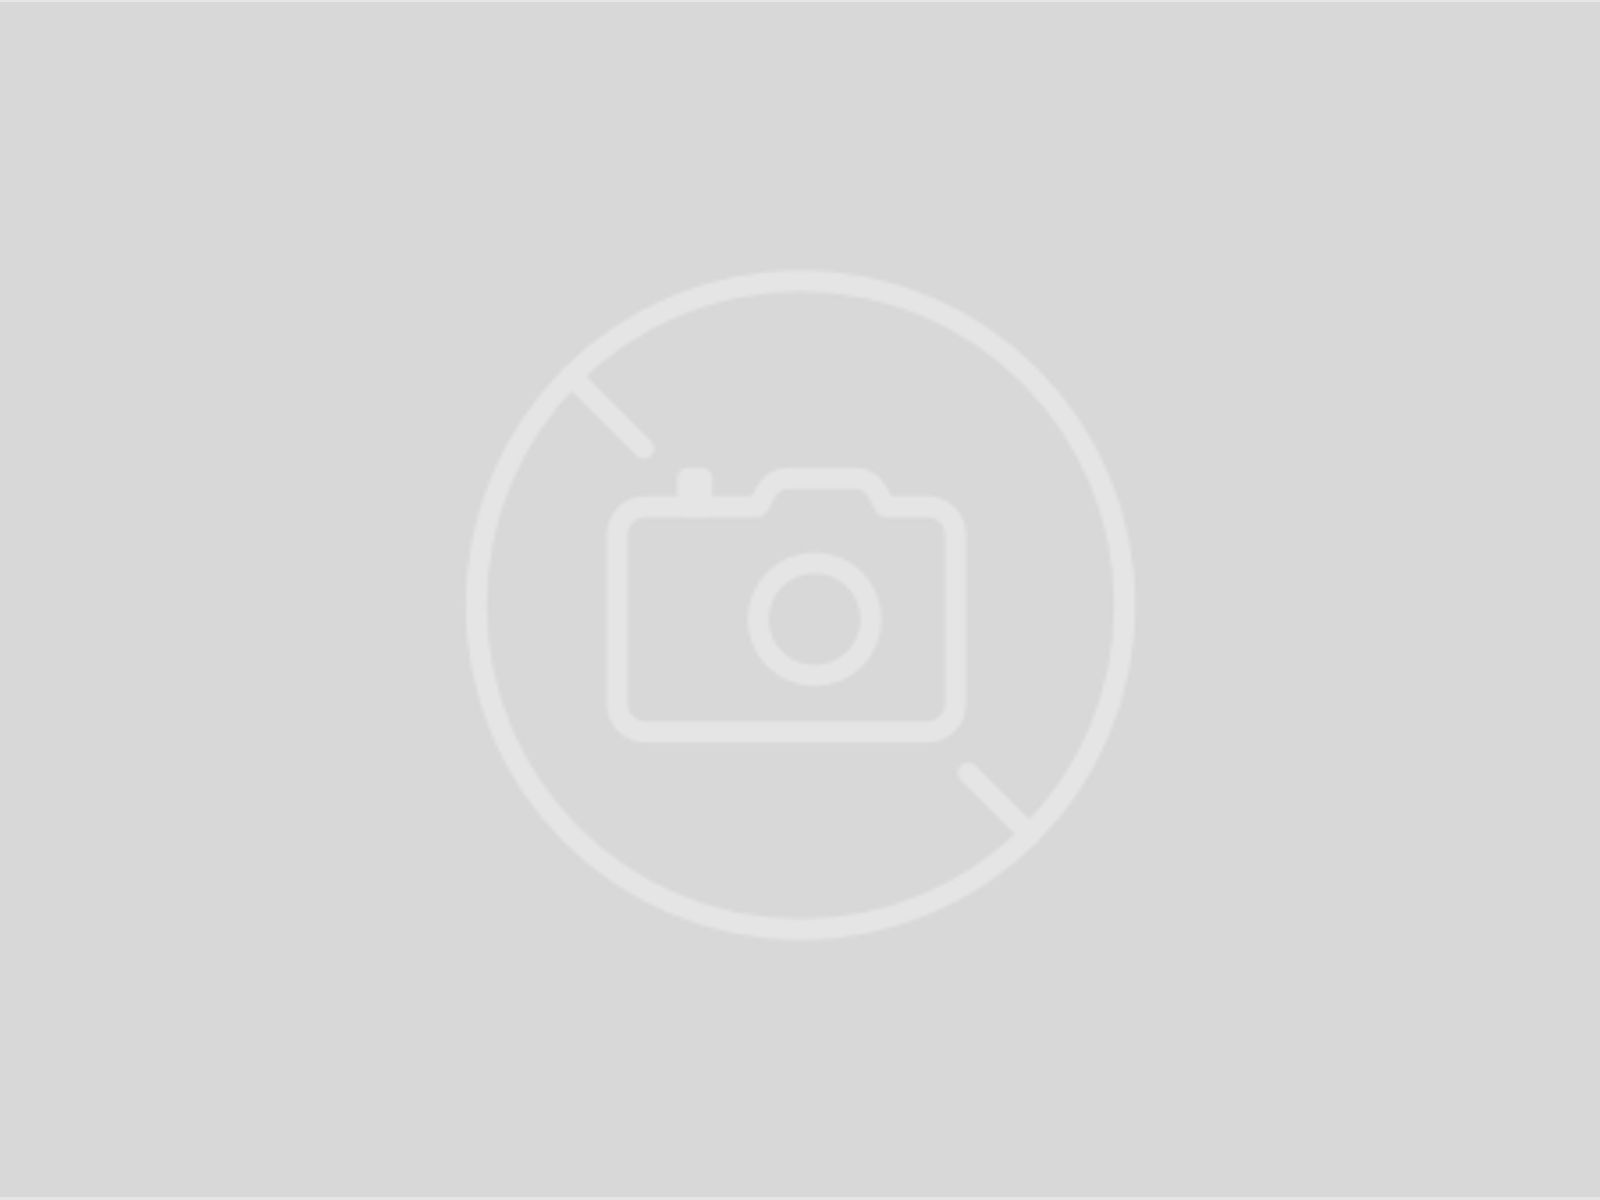 Leica Zielfernrohr MAGNUS 2.4-16x56 i L-4a mit Schiene